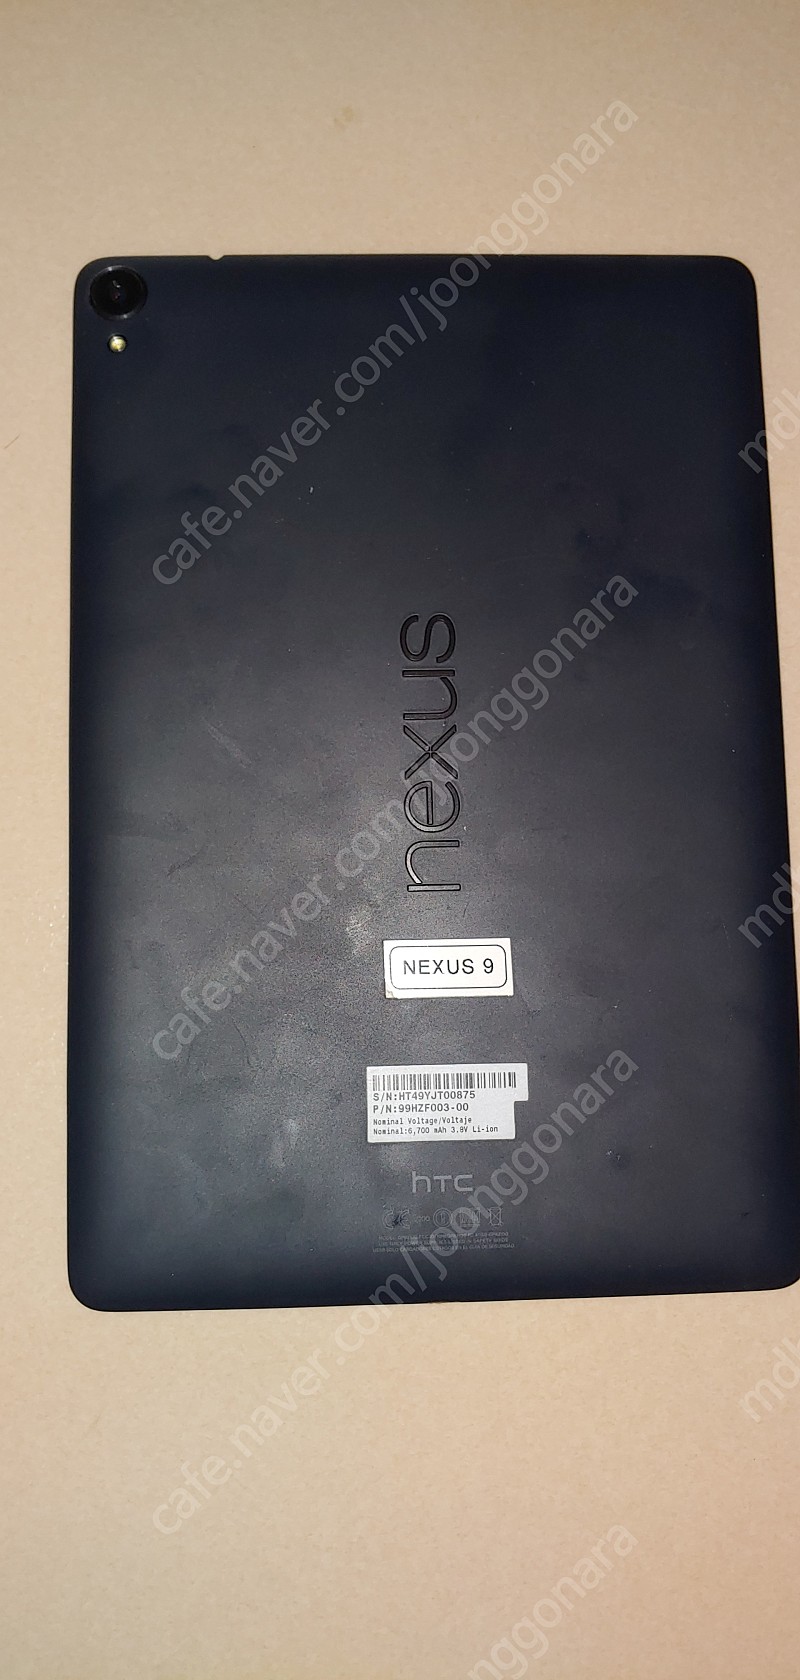 구글 넥서스9 NEXUS9 판매.